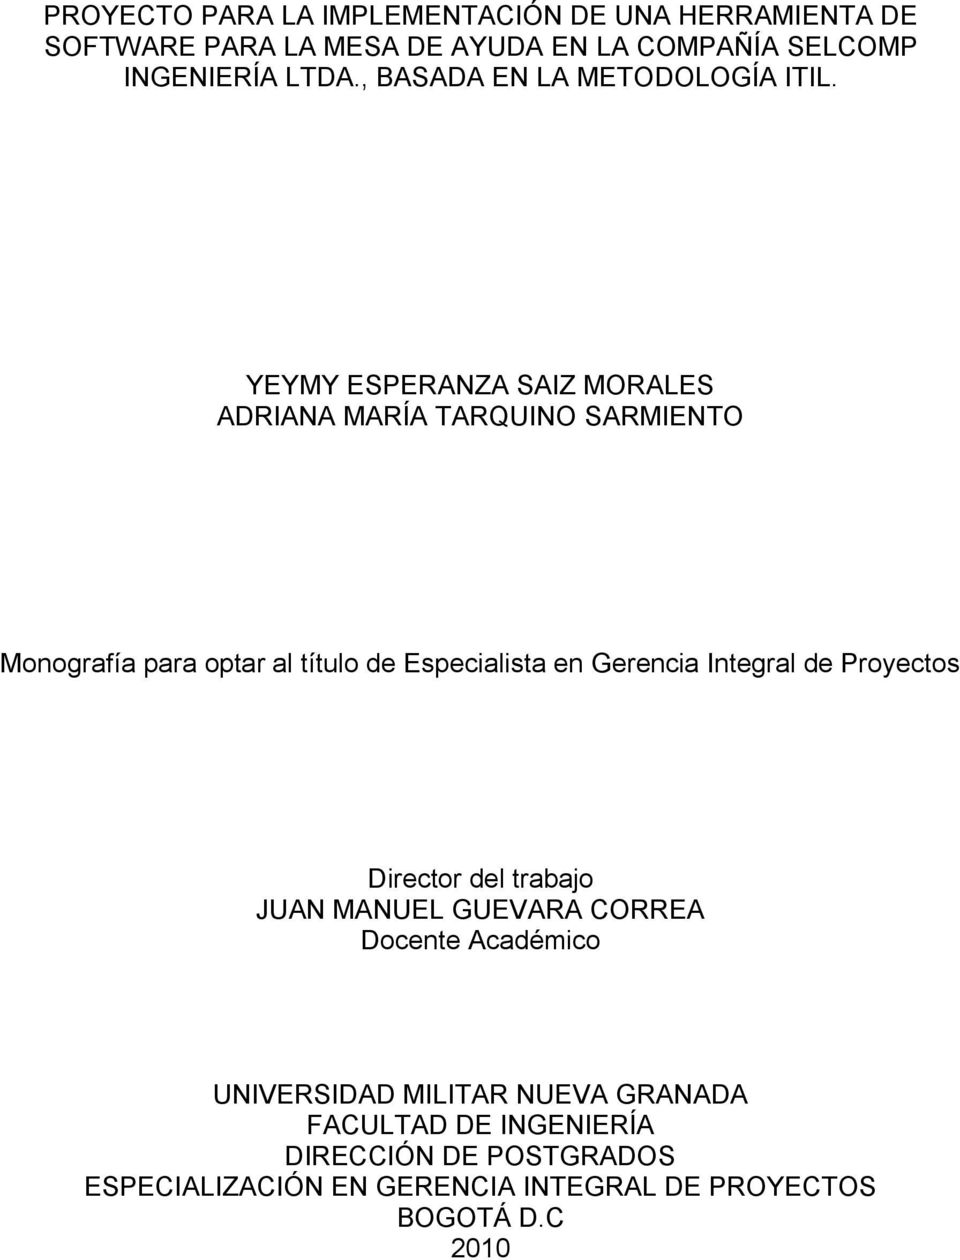 YEYMY ESPERANZA SAIZ MORALES ADRIANA MARÍA TARQUINO SARMIENTO Monografía para optar al título de Especialista en Gerencia